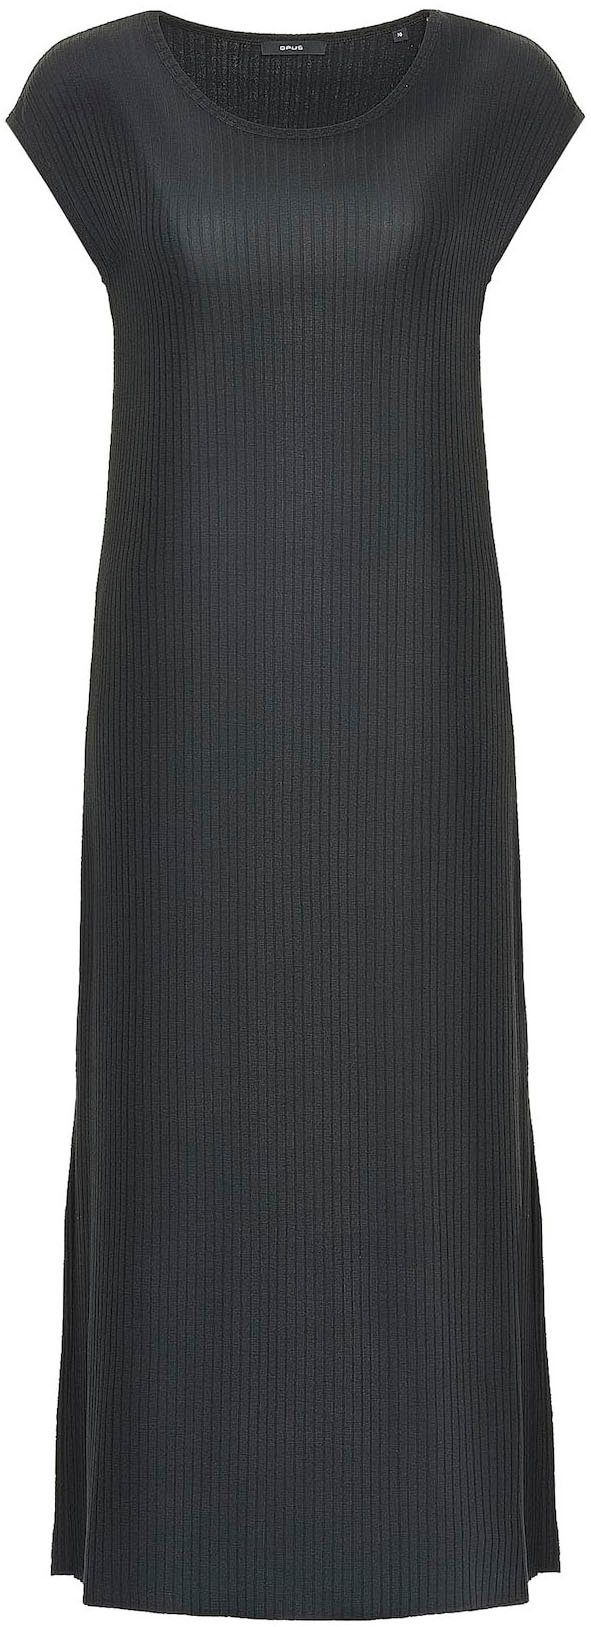 Griff OPUS black Jerseykleid mit strukturiertem Winston